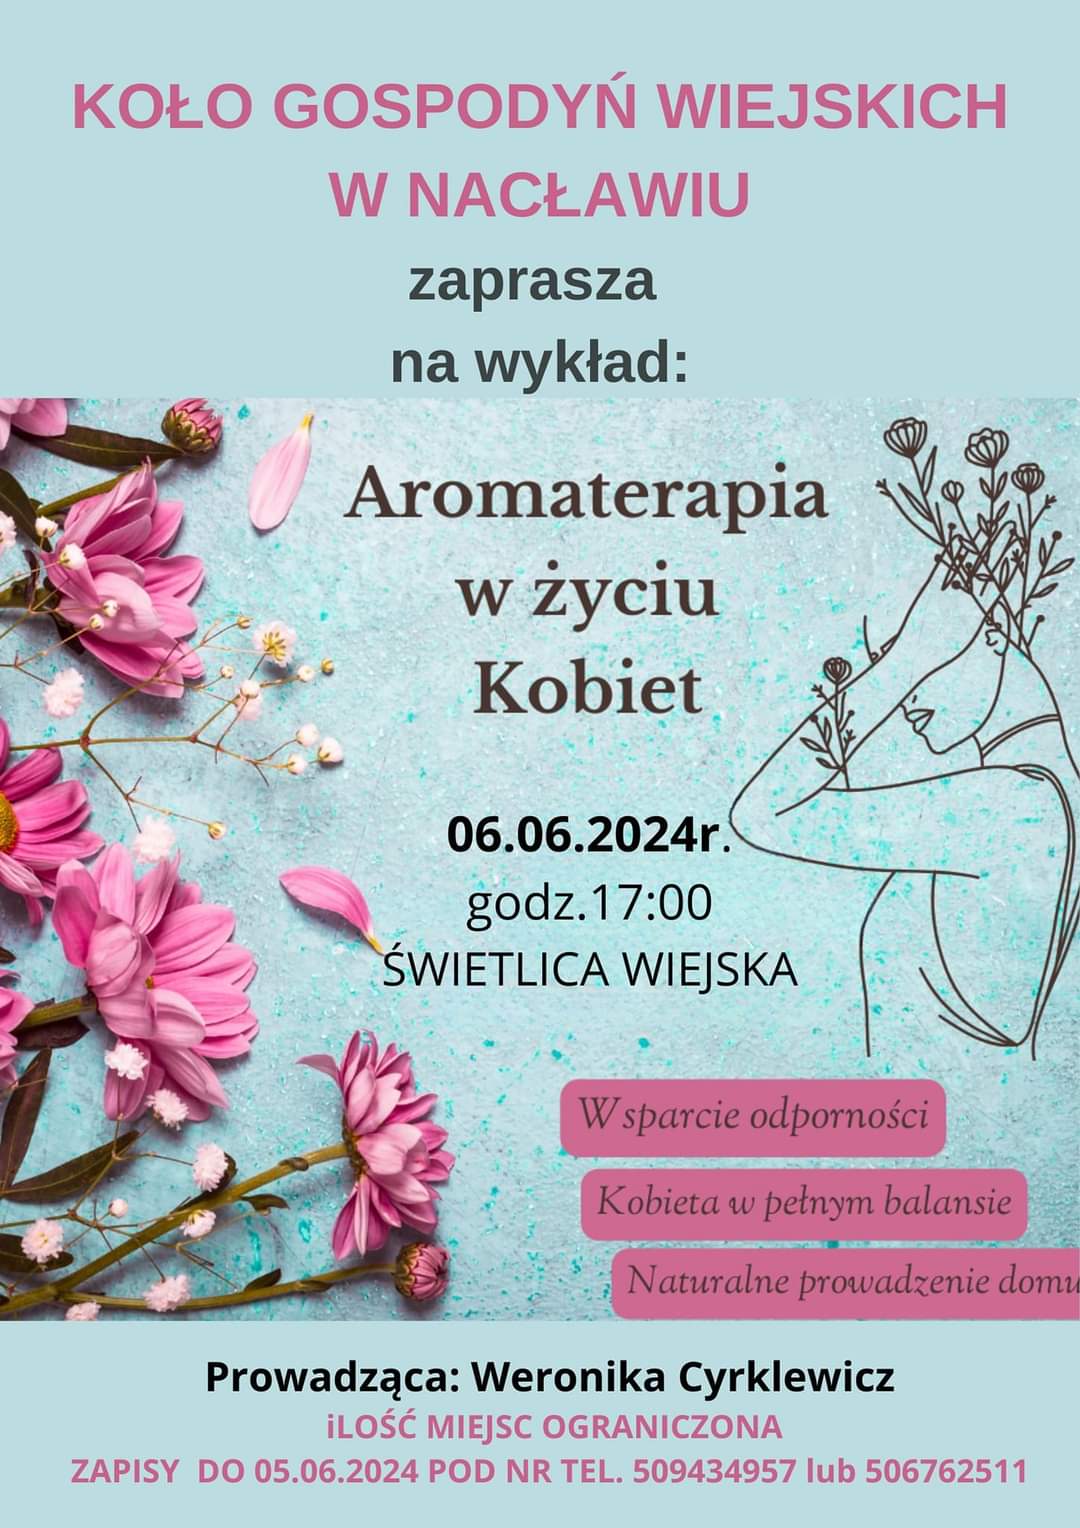 Plakat z zaproszeniem na wykład aromaterapia w życiu kobiet 6 czerwca 2024 Nacław